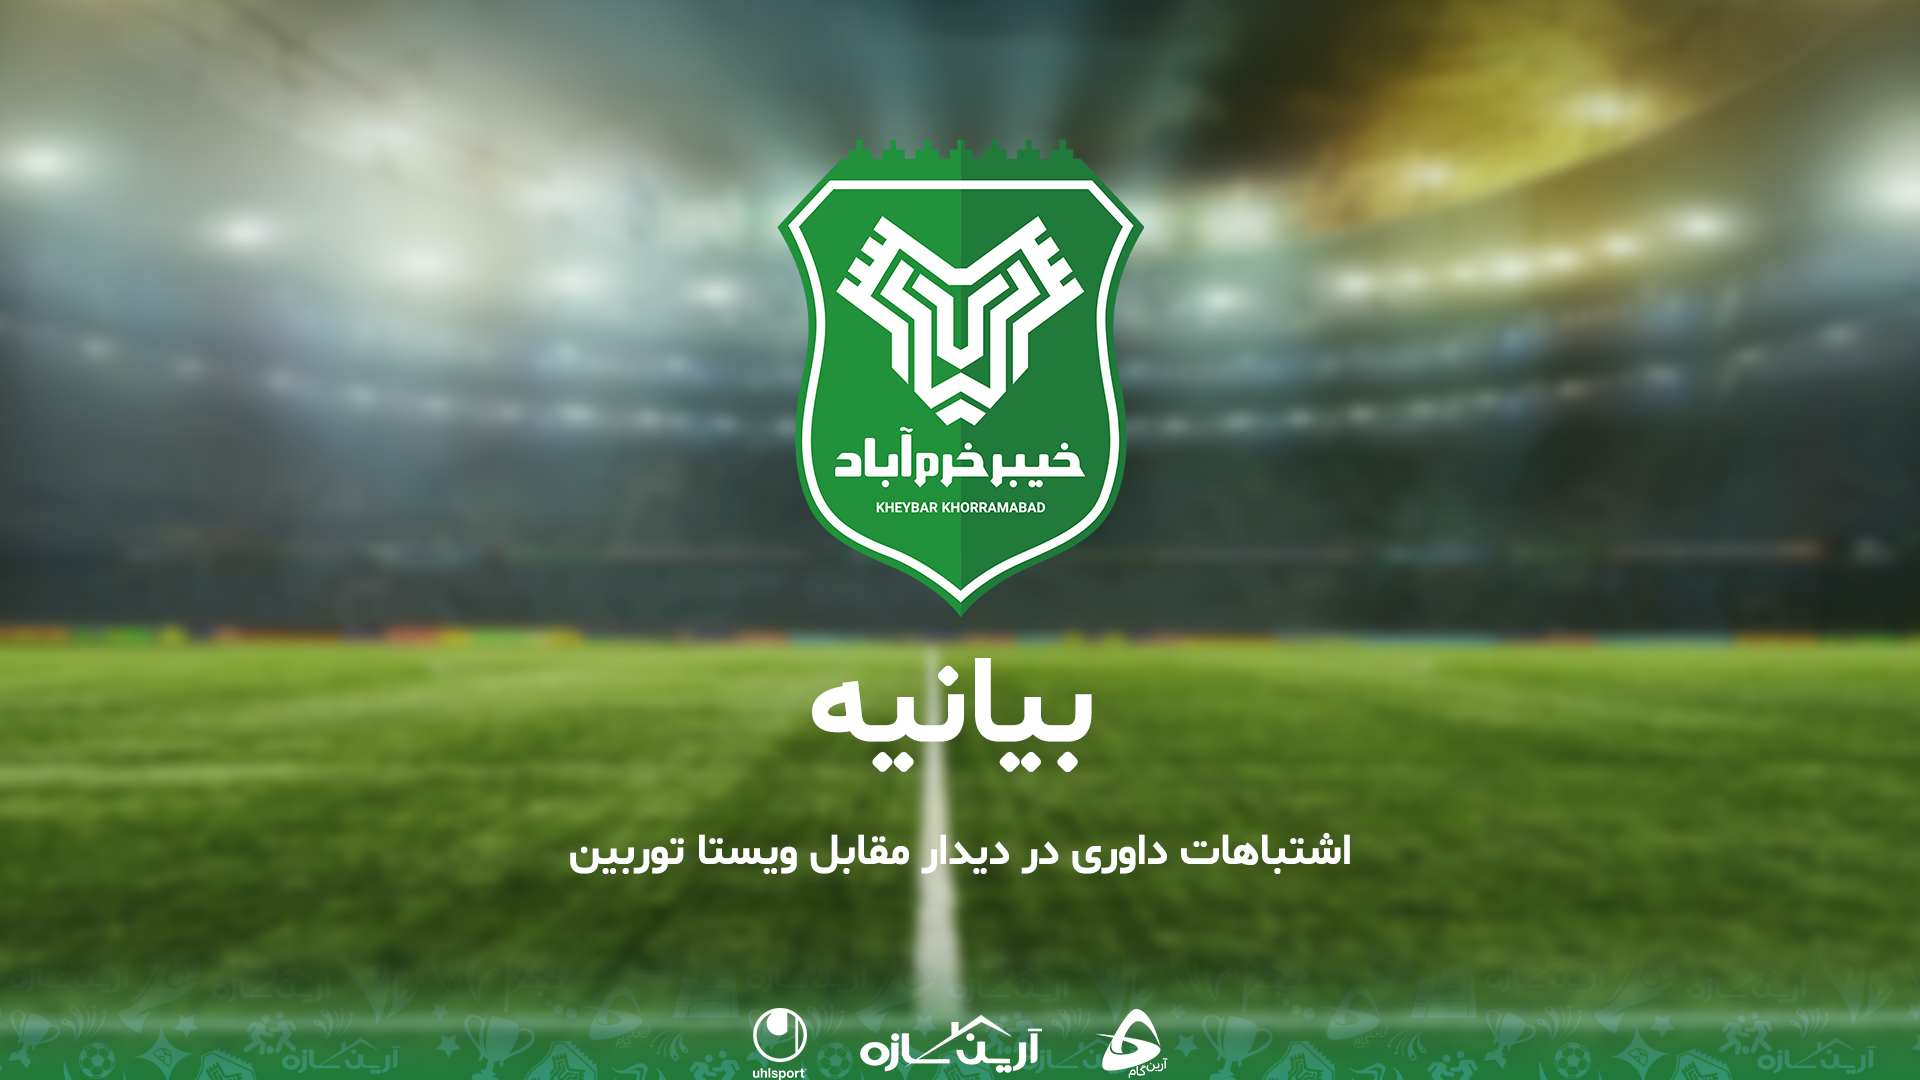 بیانیه رسمی باشگاه خیبر خرم آباد در خصوص اشتباهات داوری در دیدار مقابل ویستاتوربین تهران